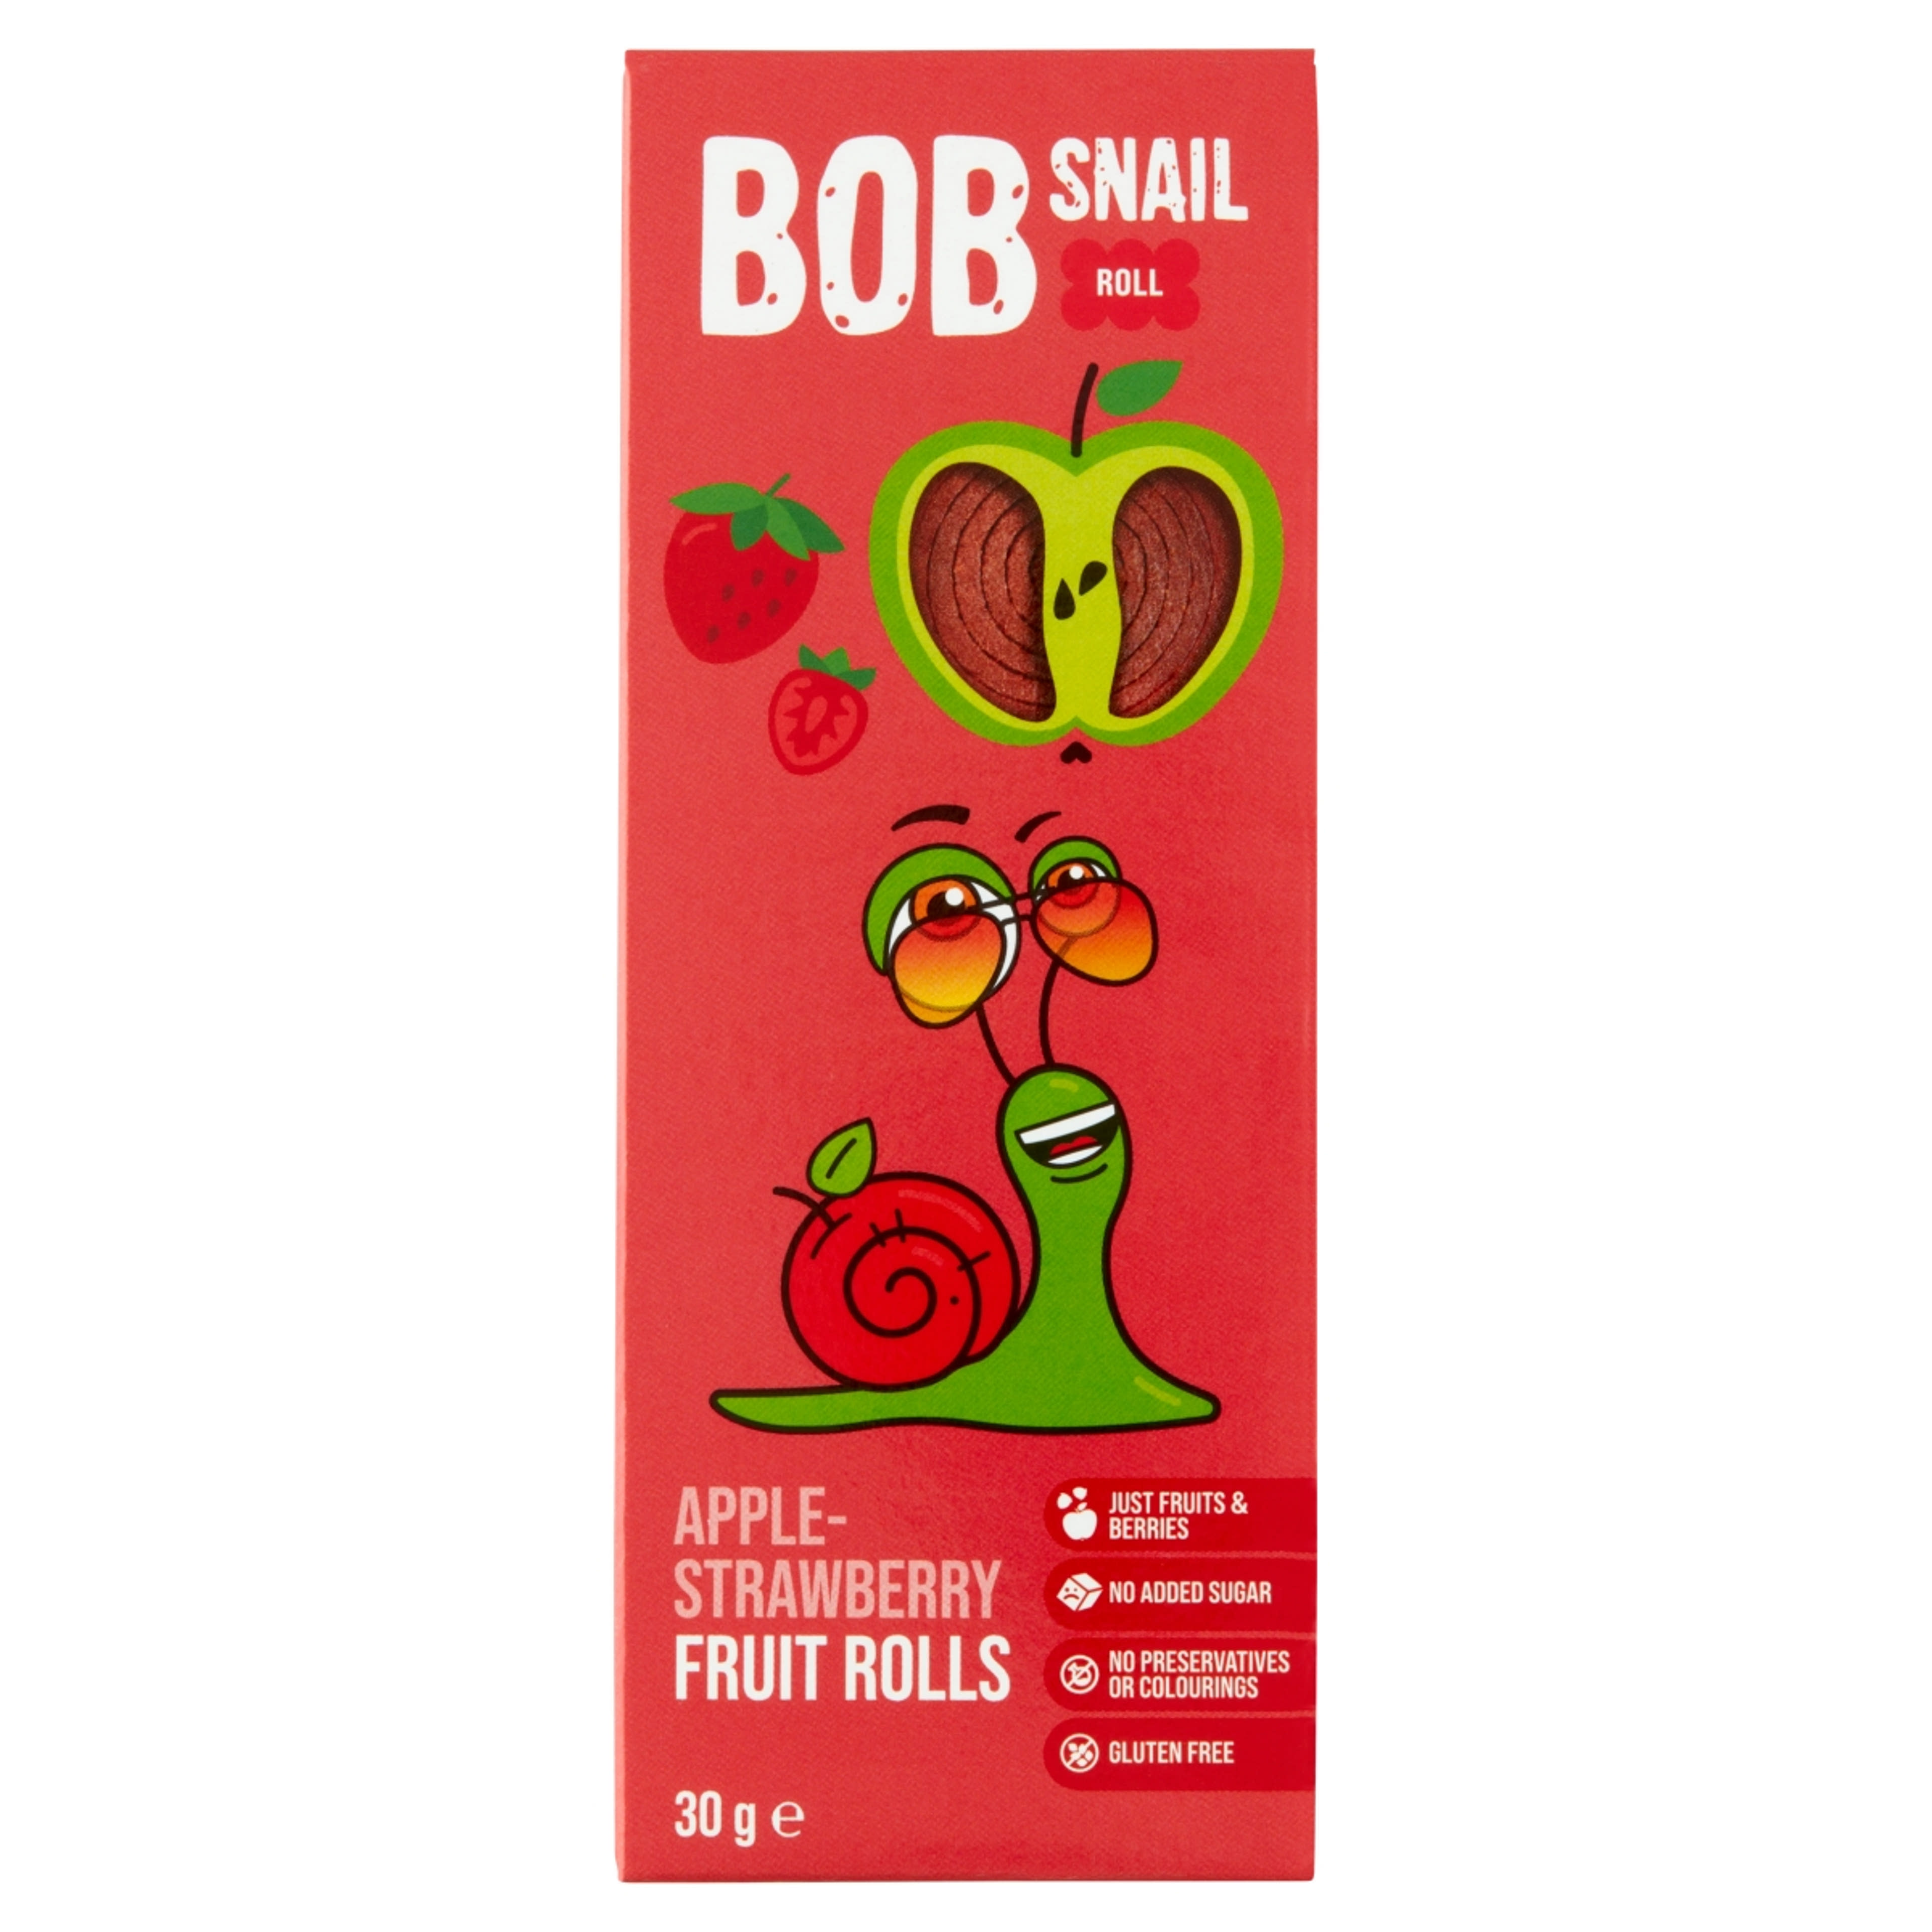 Bob Snail alma-eper rolls - 30 g